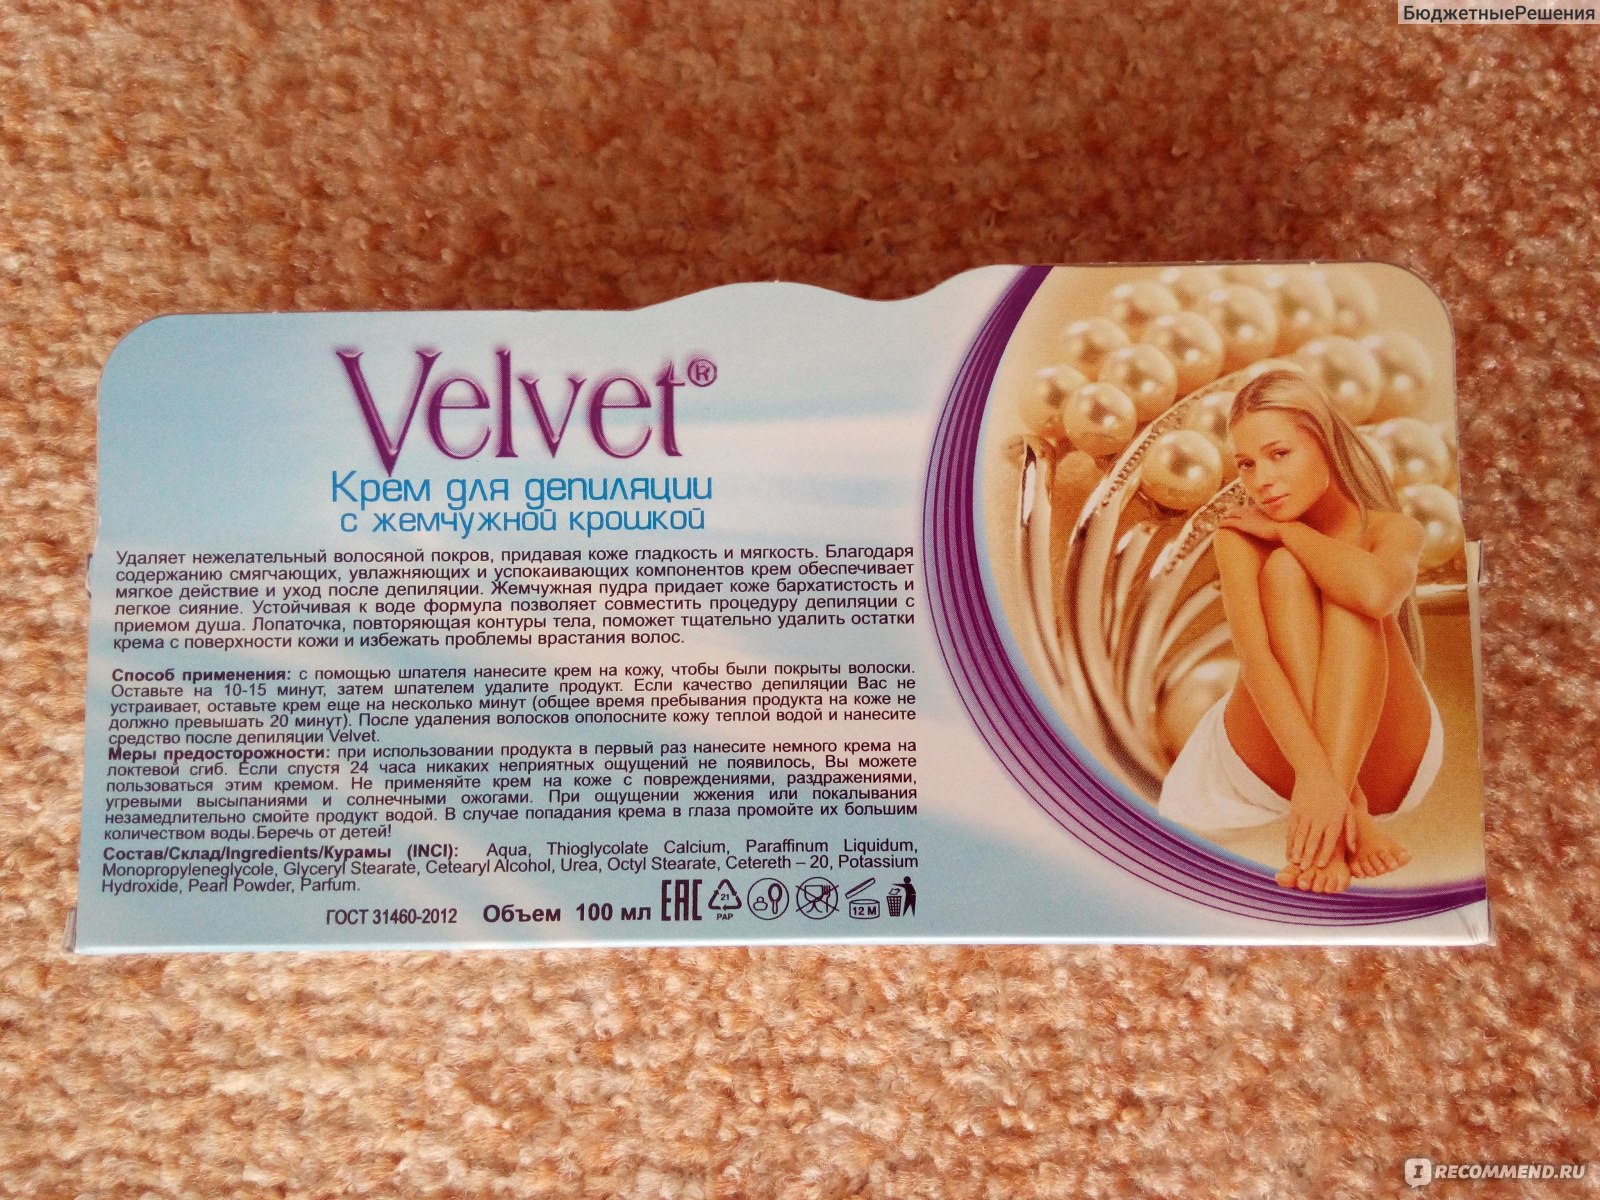 Velvet с лавандовым маслом самый популярный крем для депиляции